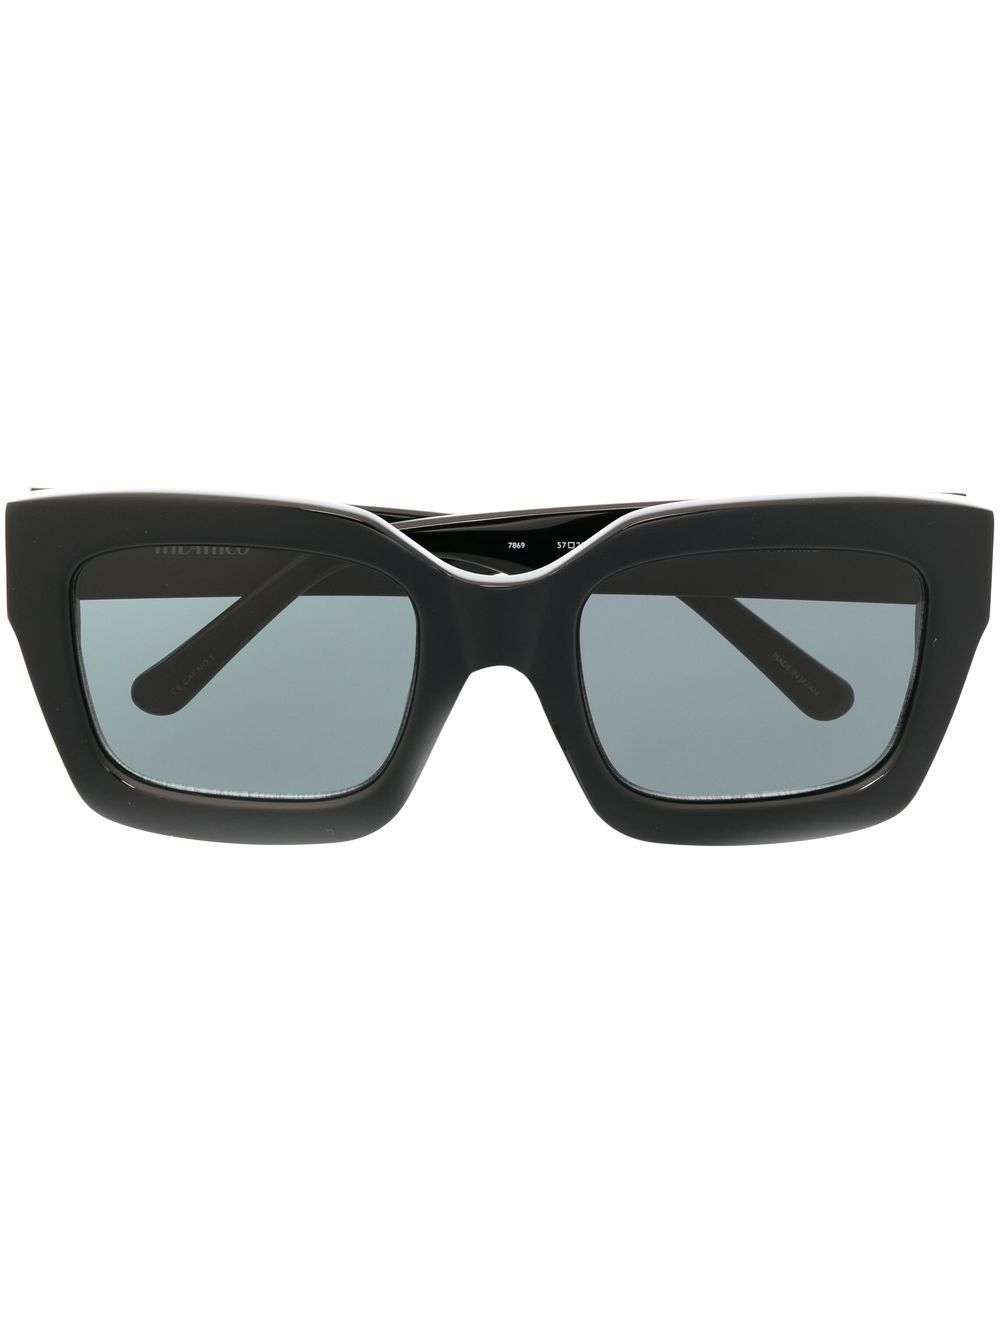 Image 1 of Linda Farrow x The Attico Selma sunglasses